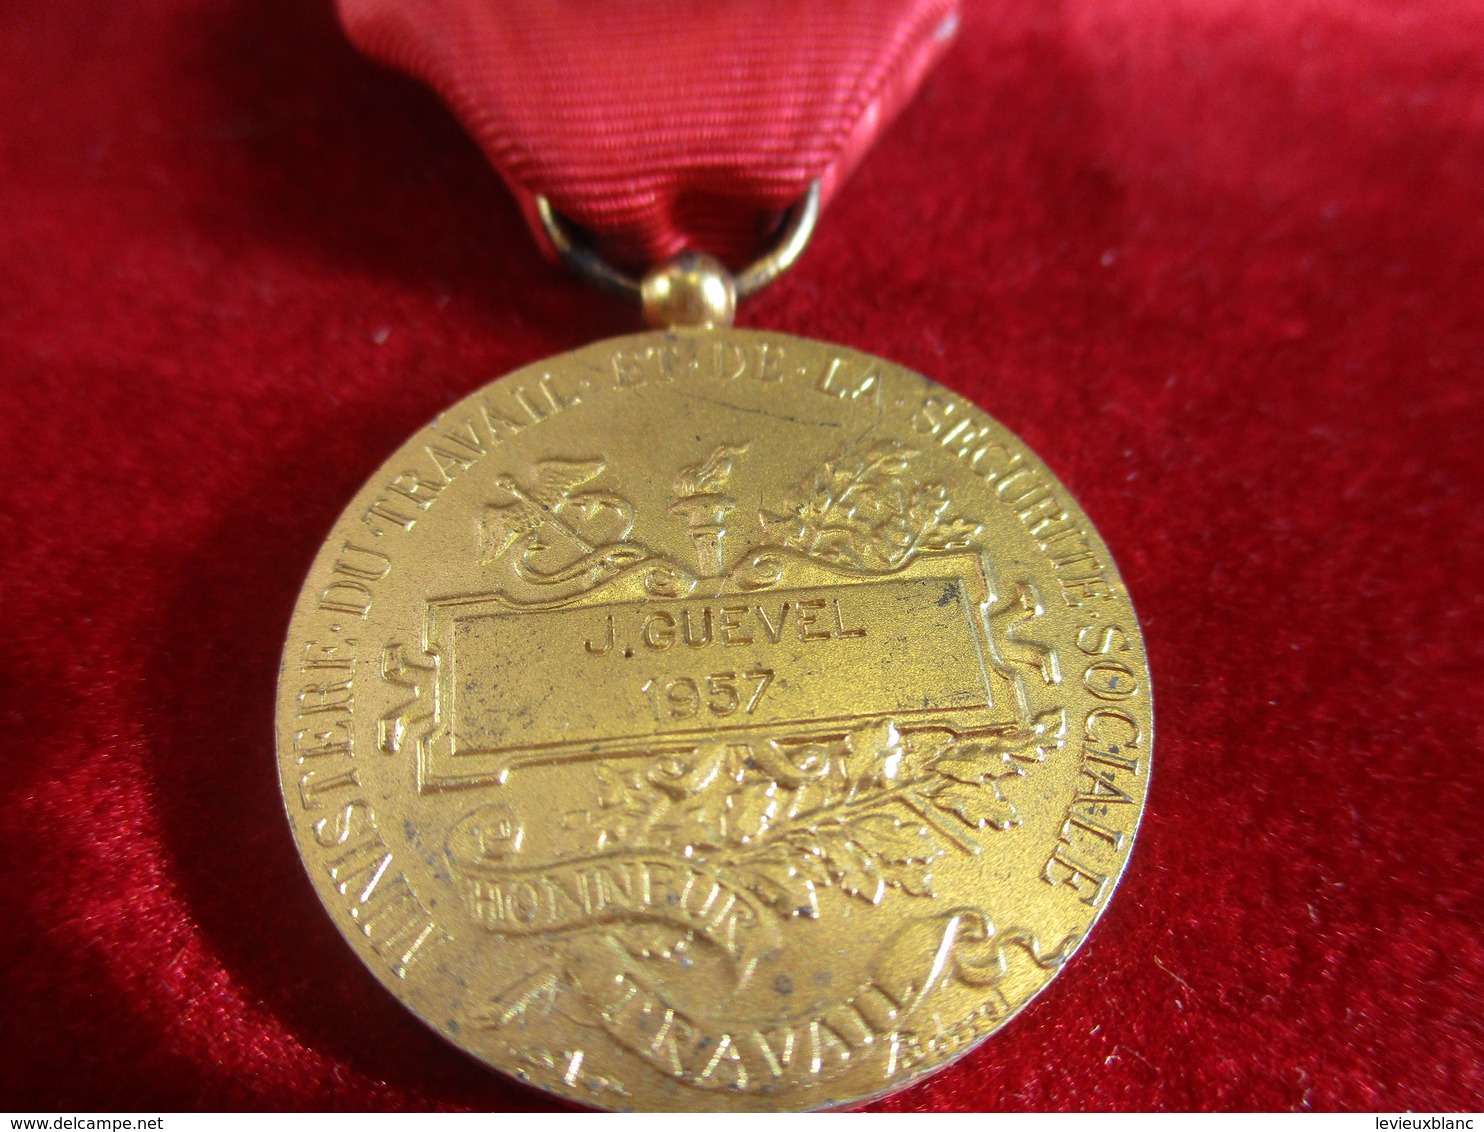 2 Médailles Du Travail/ Ministére Du Travail Et De La Sécurité Sociale/ Argent Et Vermeil/J. GUEVEL/ 1957   MED295 - France